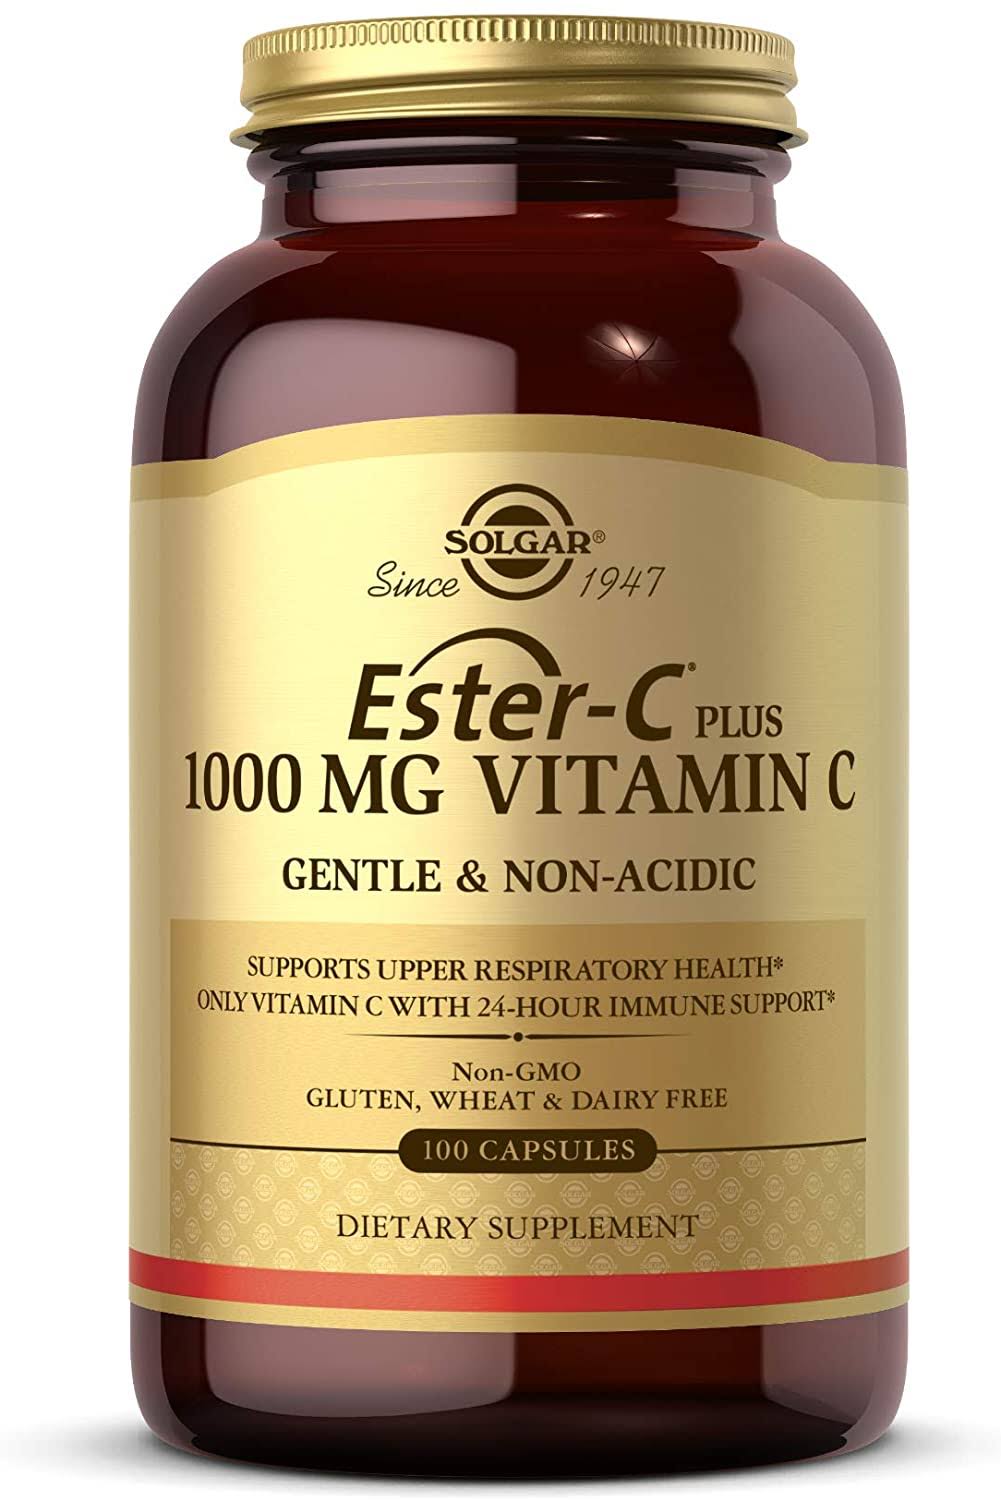 Solgar Ester-C Plus 1000 mg Vitamin C 100 Capsules